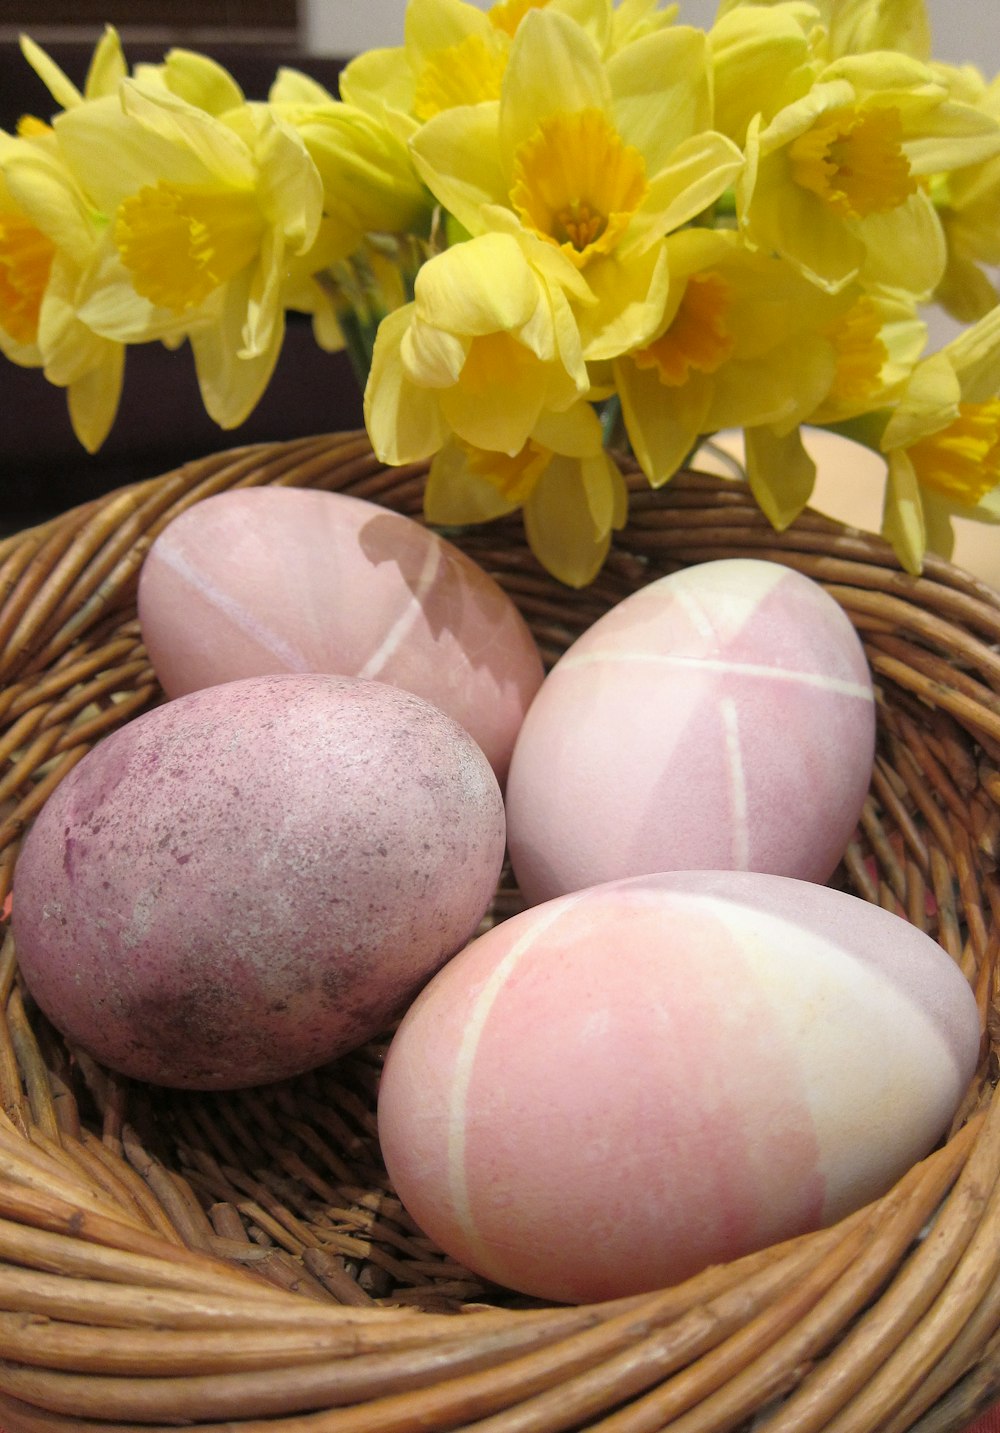 Una cesta de mimbre llena de huevos y flores amarillas